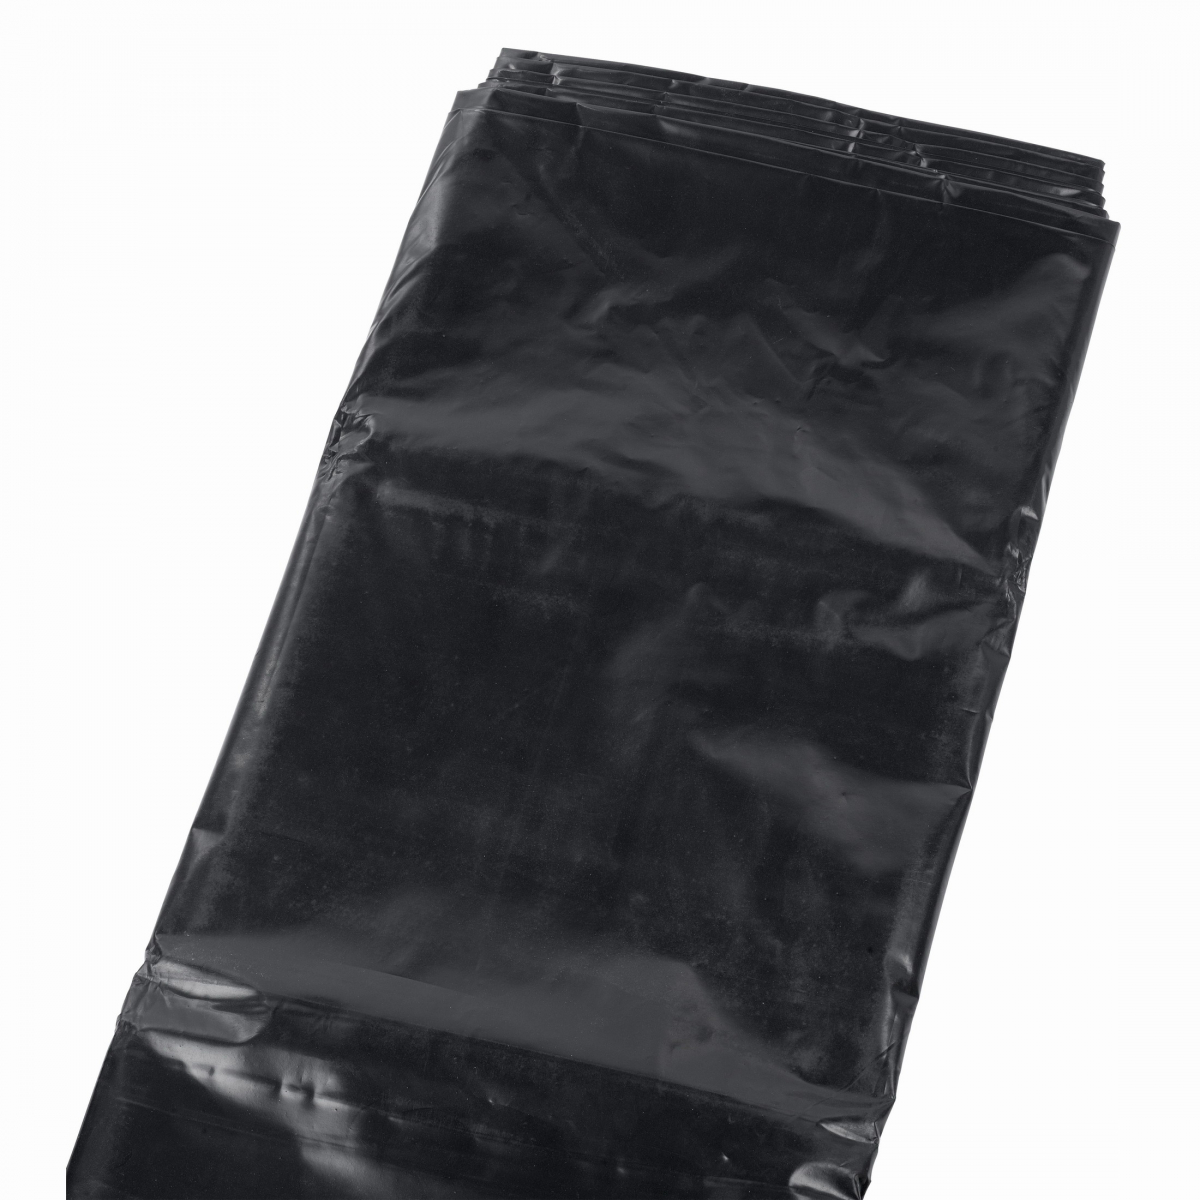 KRT664001 - Zakrývací folie, plachta černá 4x6m 0,1mm